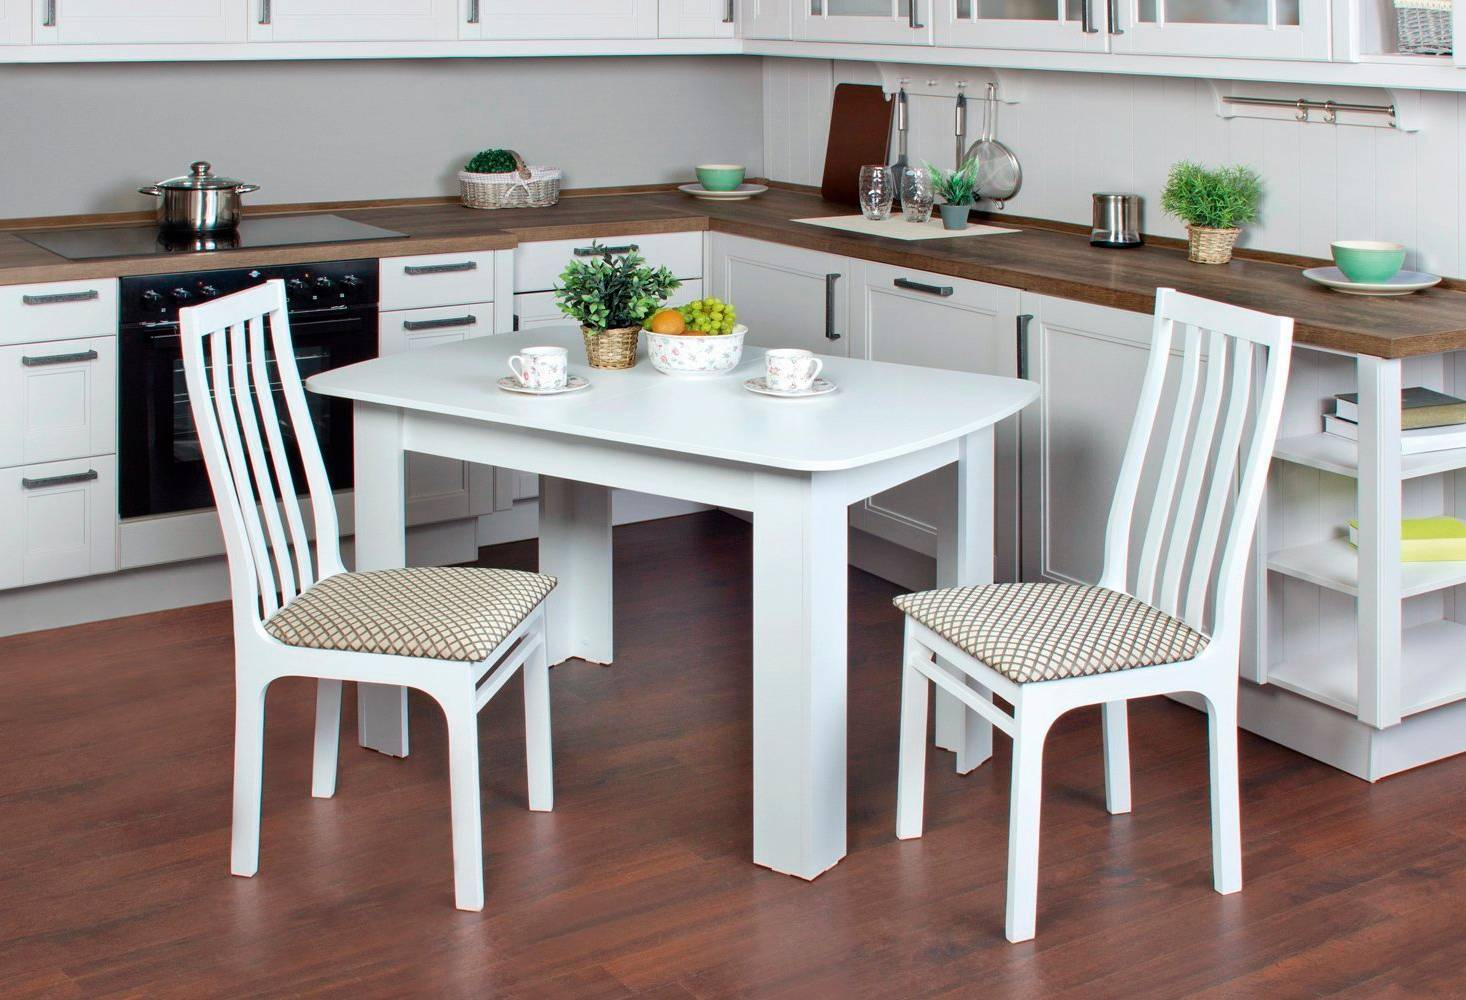 Как выбрать идеальный кухонный стол для вашего интерьера?(+фото)